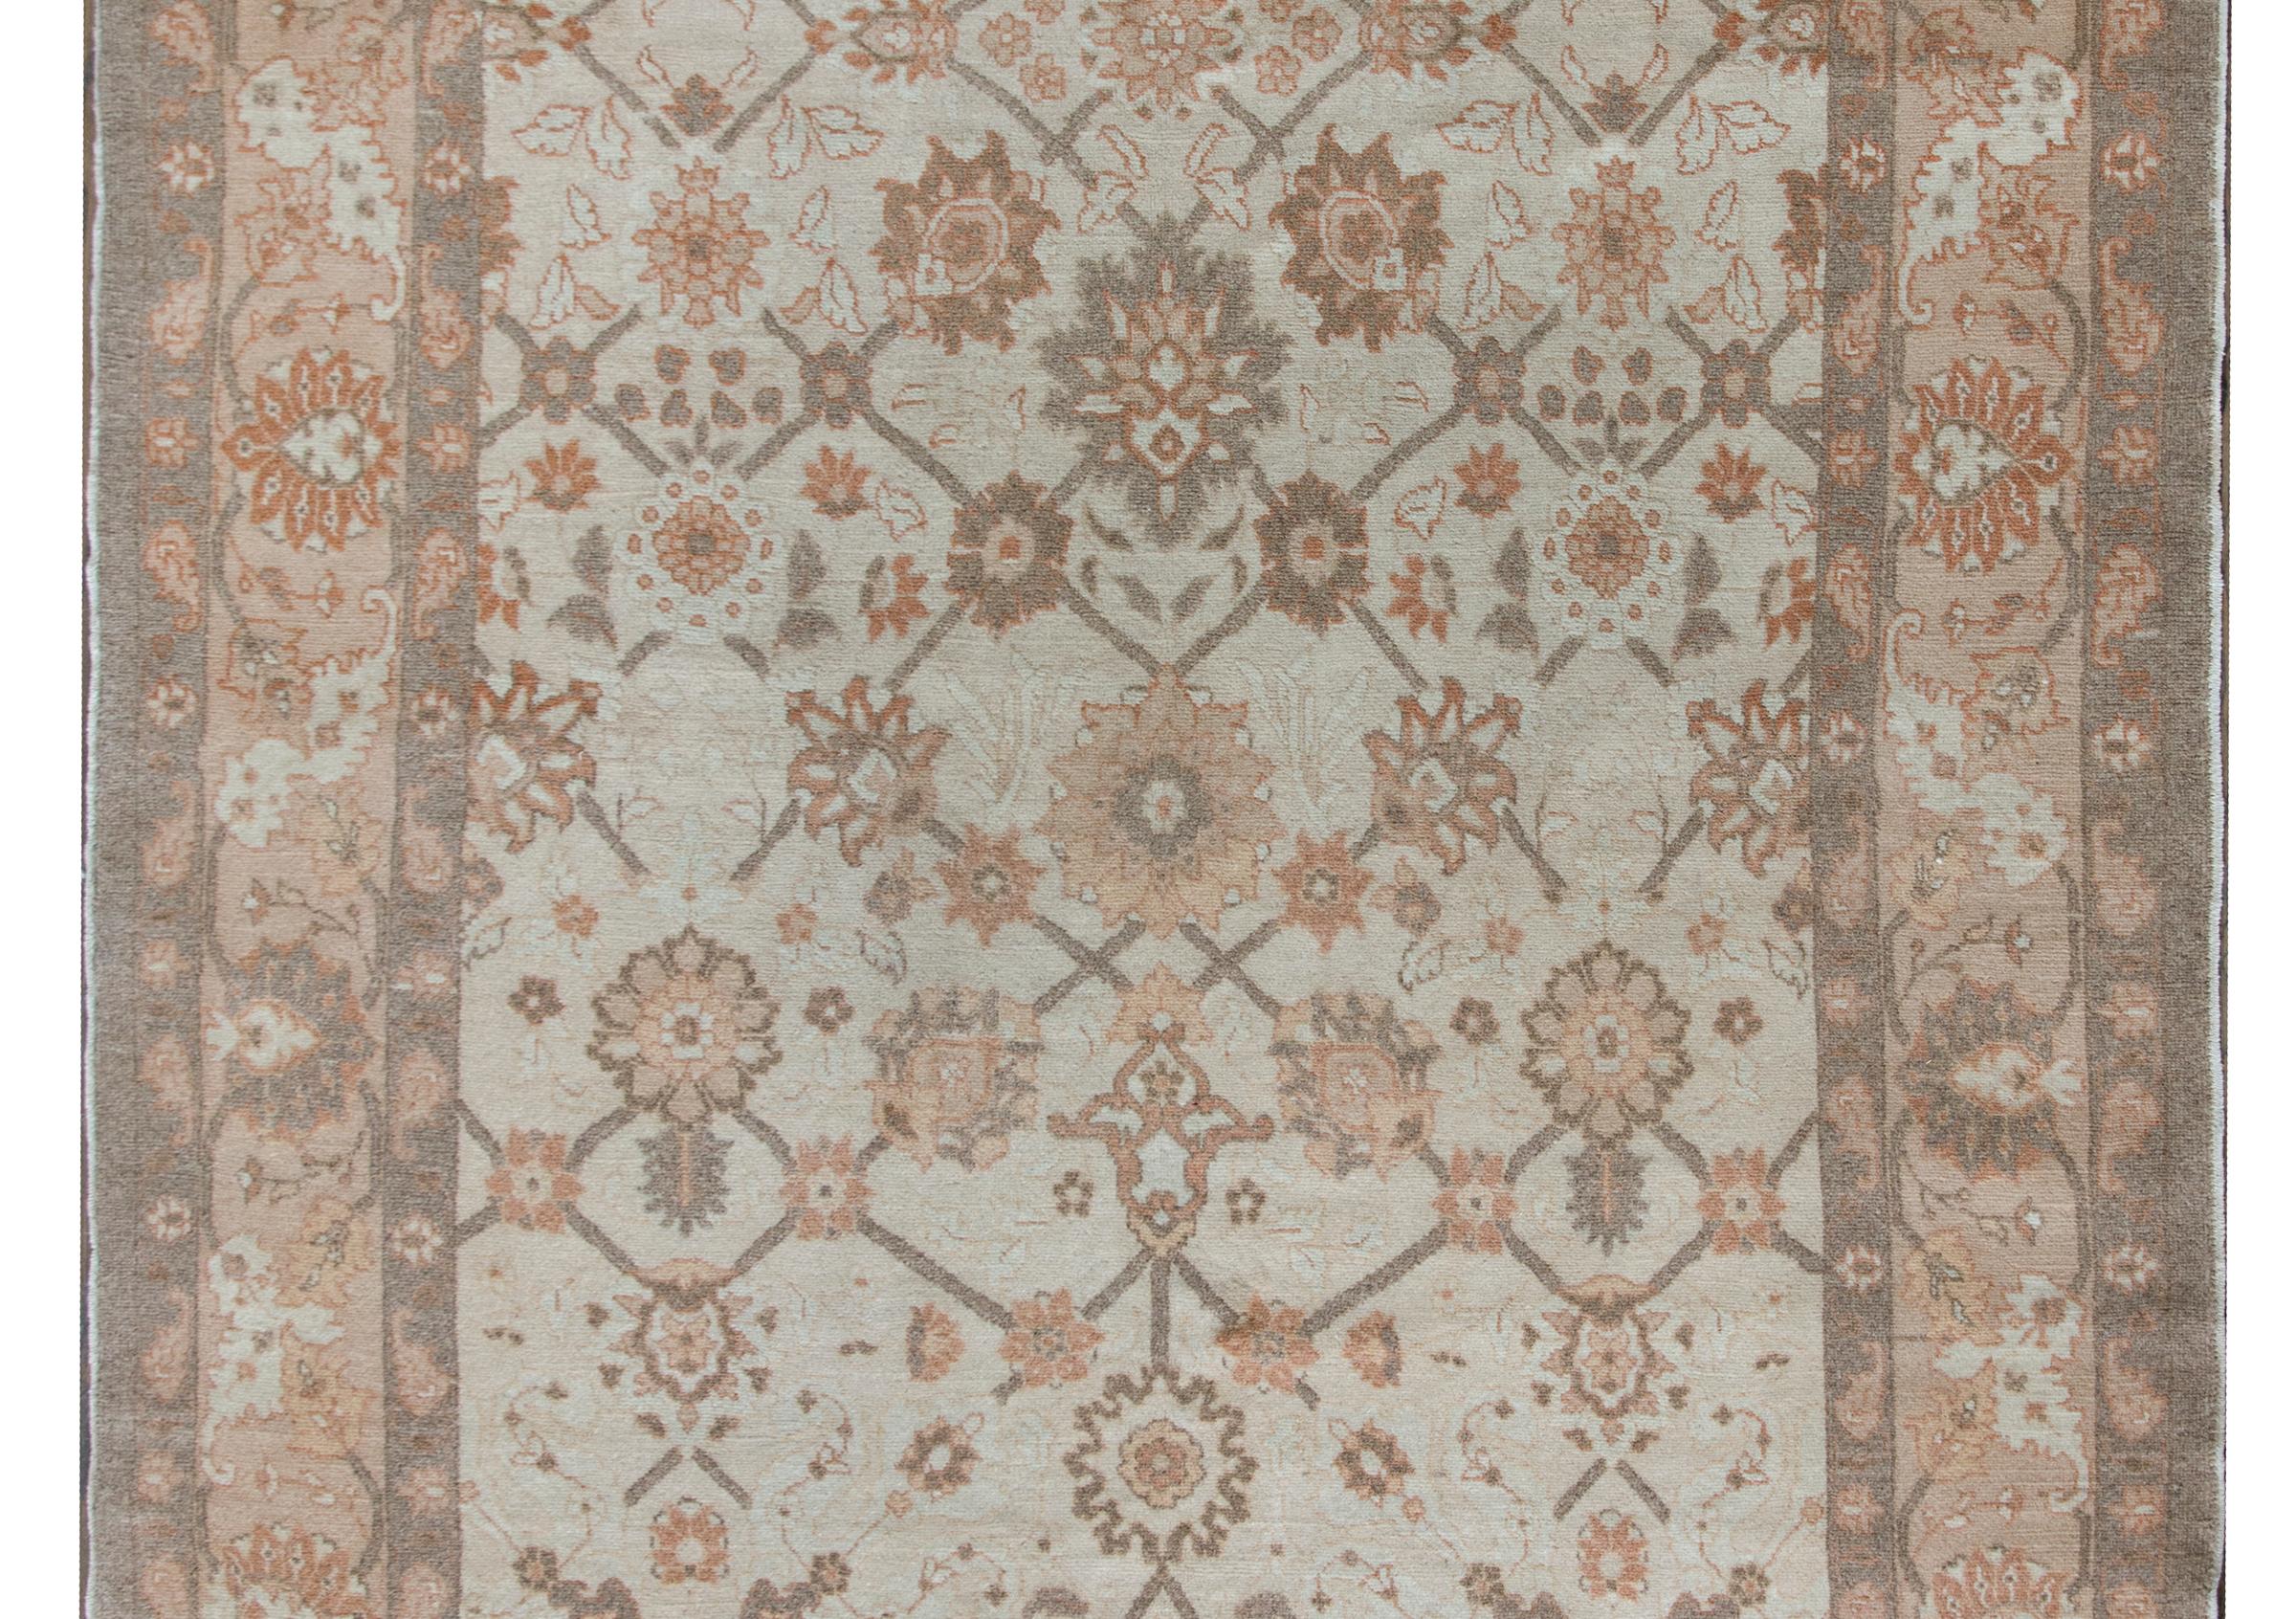 Ein schicker persischer Täbriz-Teppich aus dem späten 20. Jahrhundert mit einem wunderbaren floralen Spaliermuster mit den herrlichsten großformatigen Blumen, umgeben von einer breiten Bordüre mit mehreren Blumen- und Rankenmustern, alles in